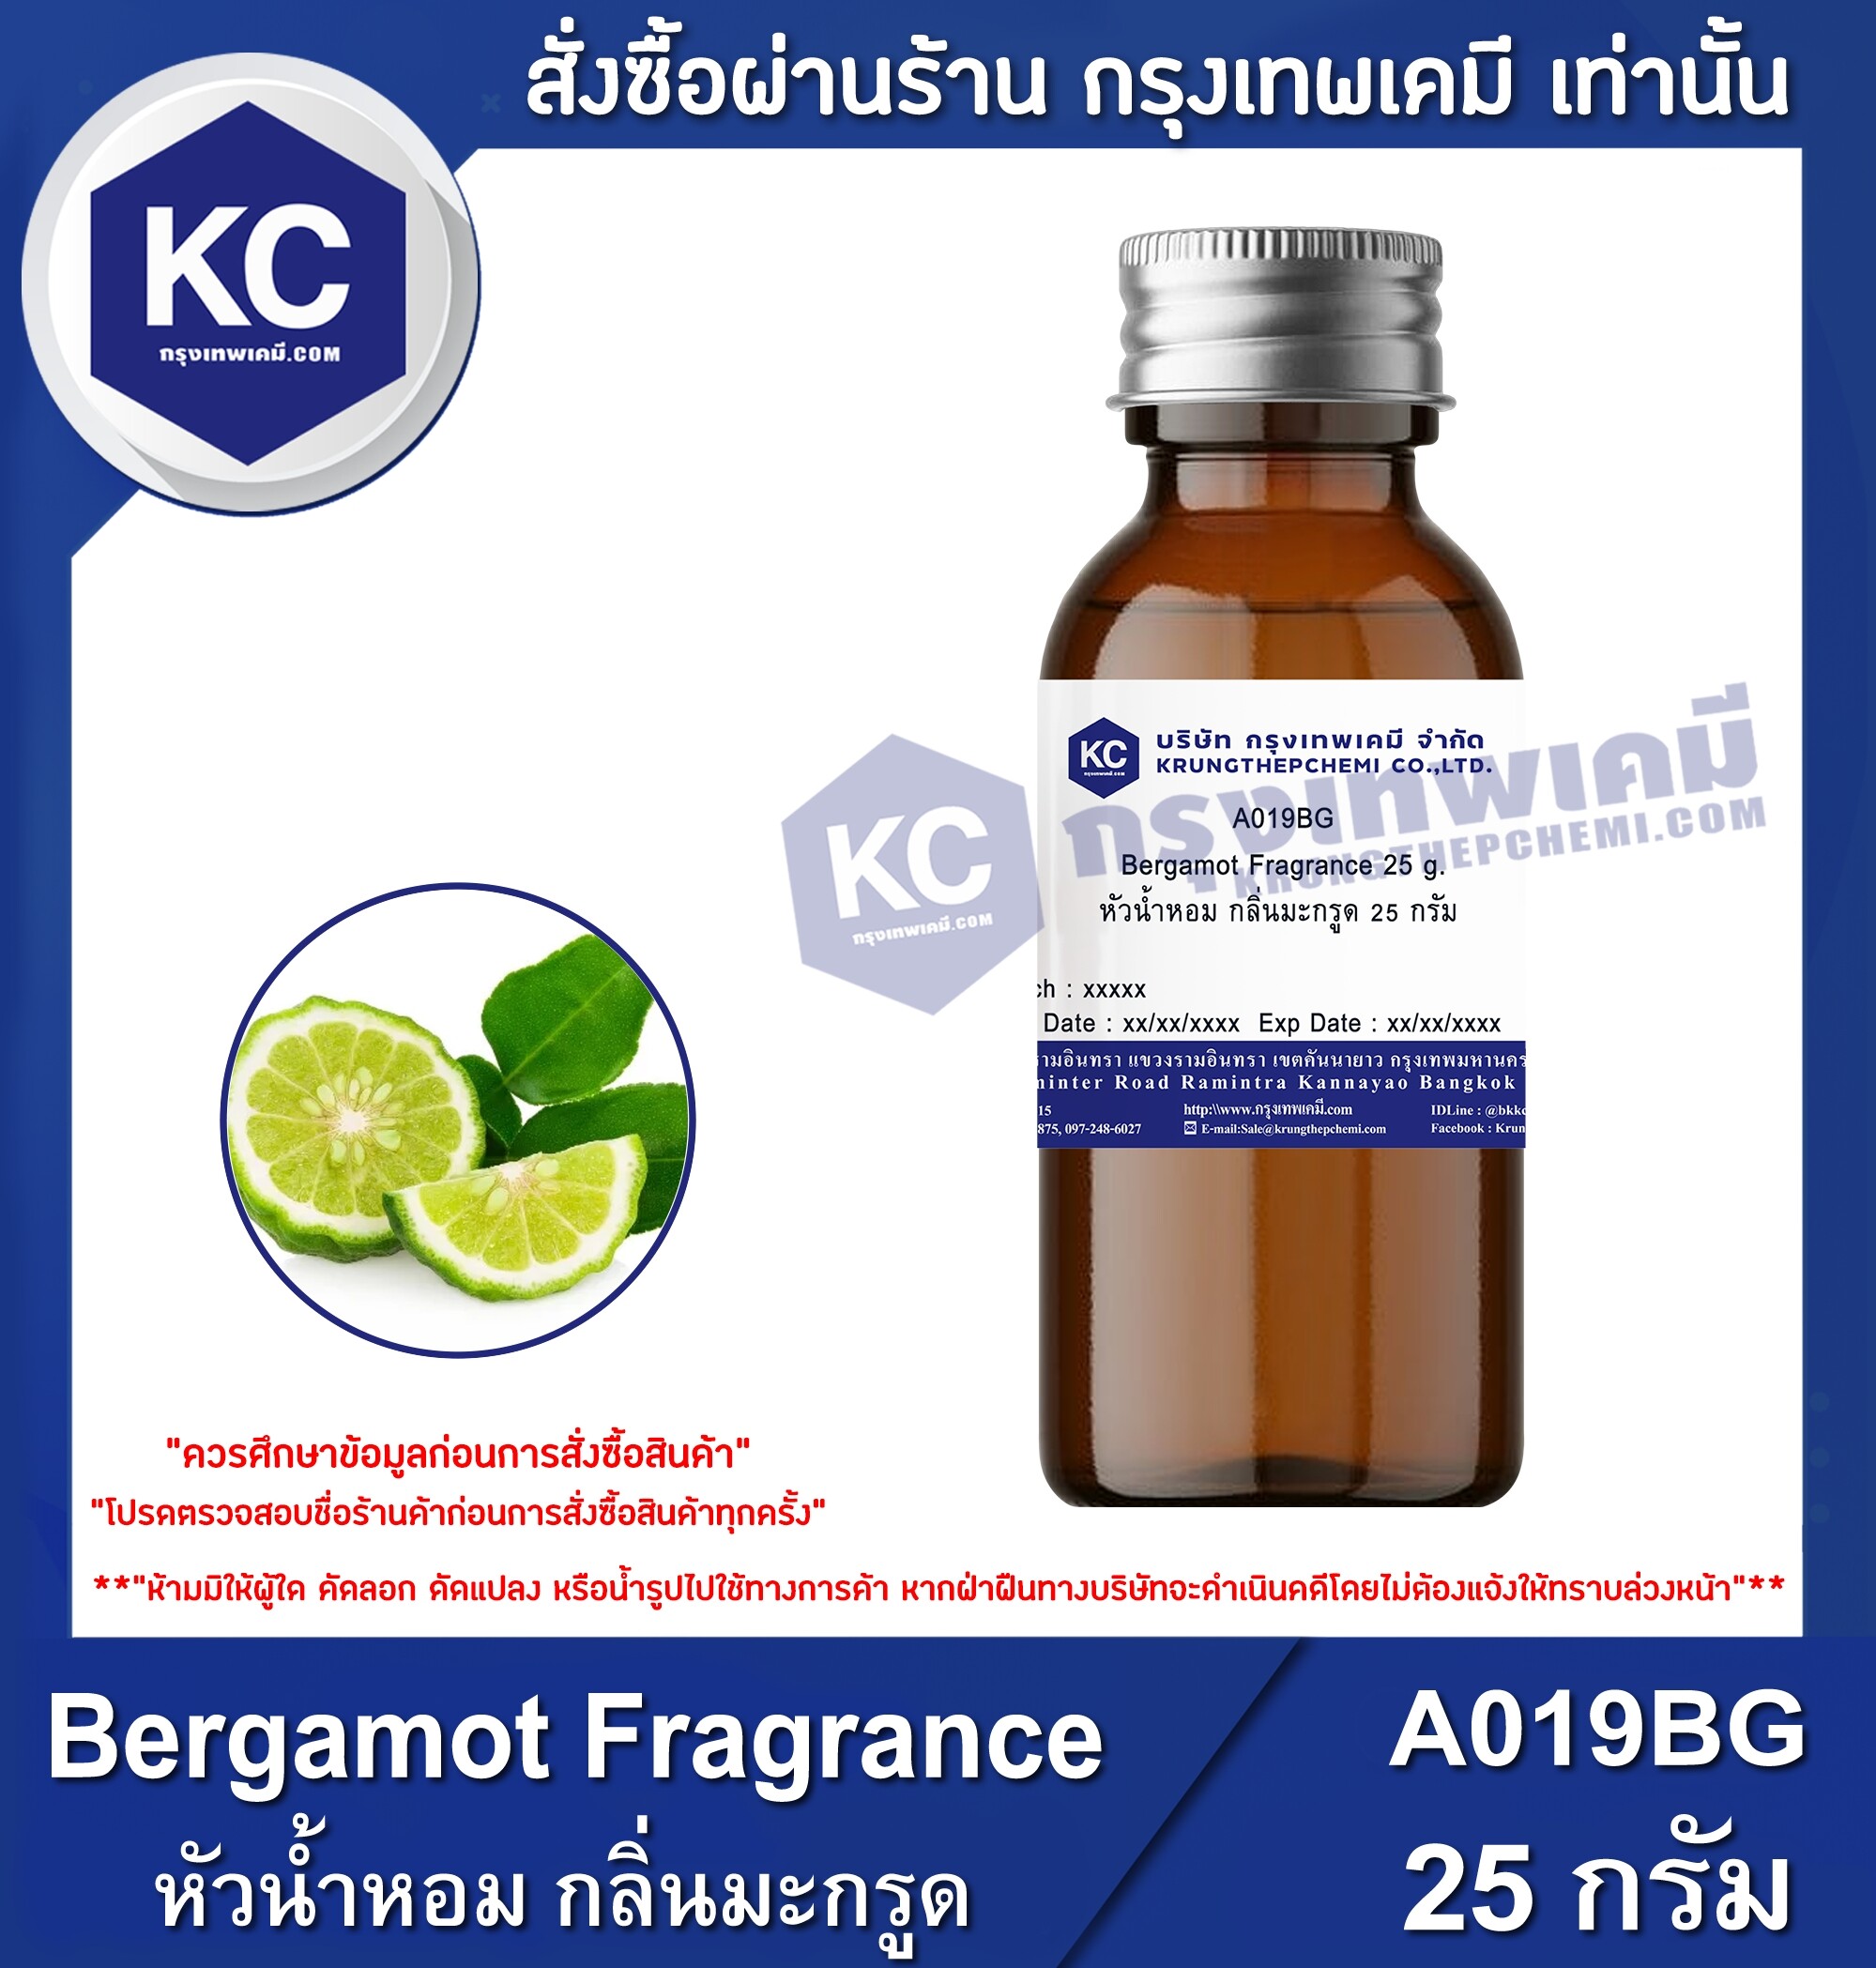 ซื้อที่ไหน หัวน้ำหอม กลิ่นมะกรูด / Bergamot Fragrance (A019BG)